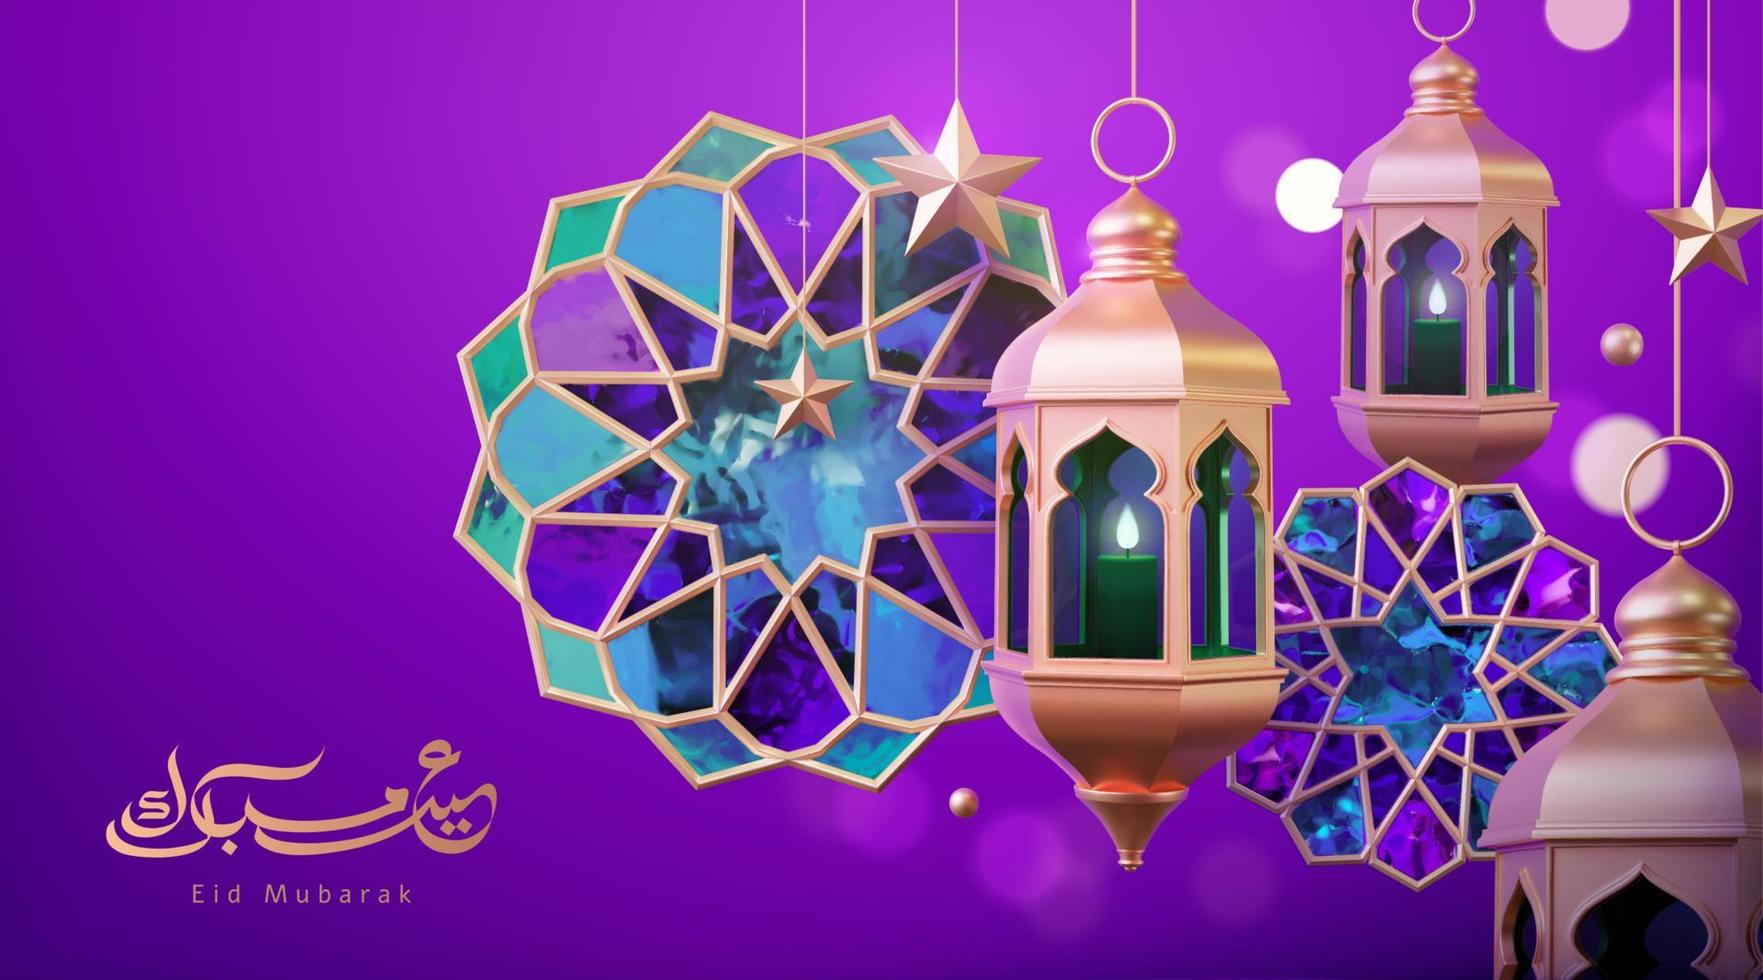 3d Purper Islamitisch stijl banier sjabloon, samengesteld door hangende goud fanatiek lantaarn, gebrandschilderd glas en ster decors. vertaling, eid mubarak vector